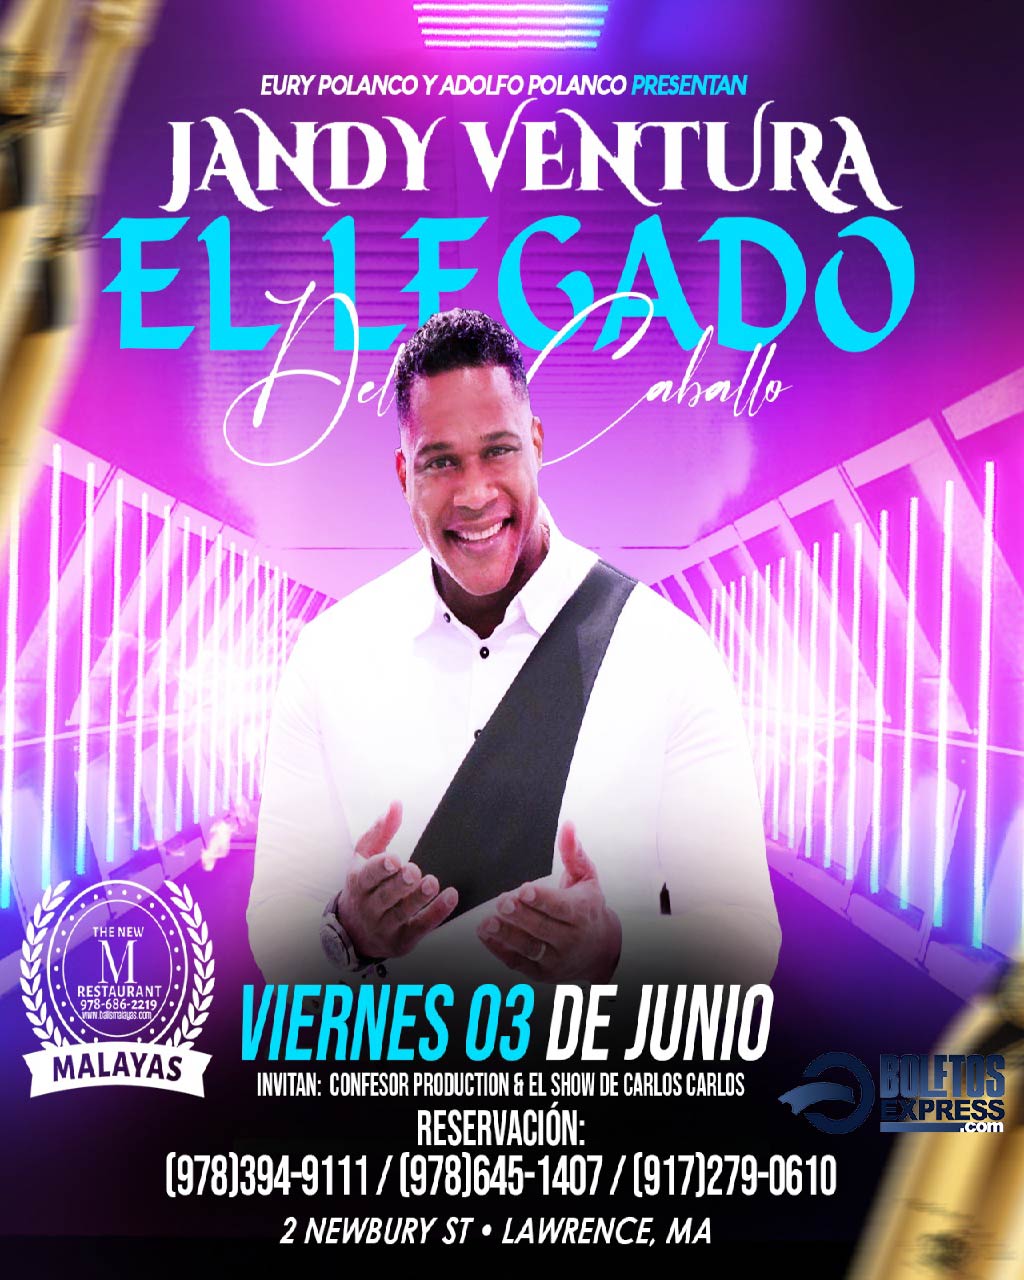 Jandy Ventura El Legado